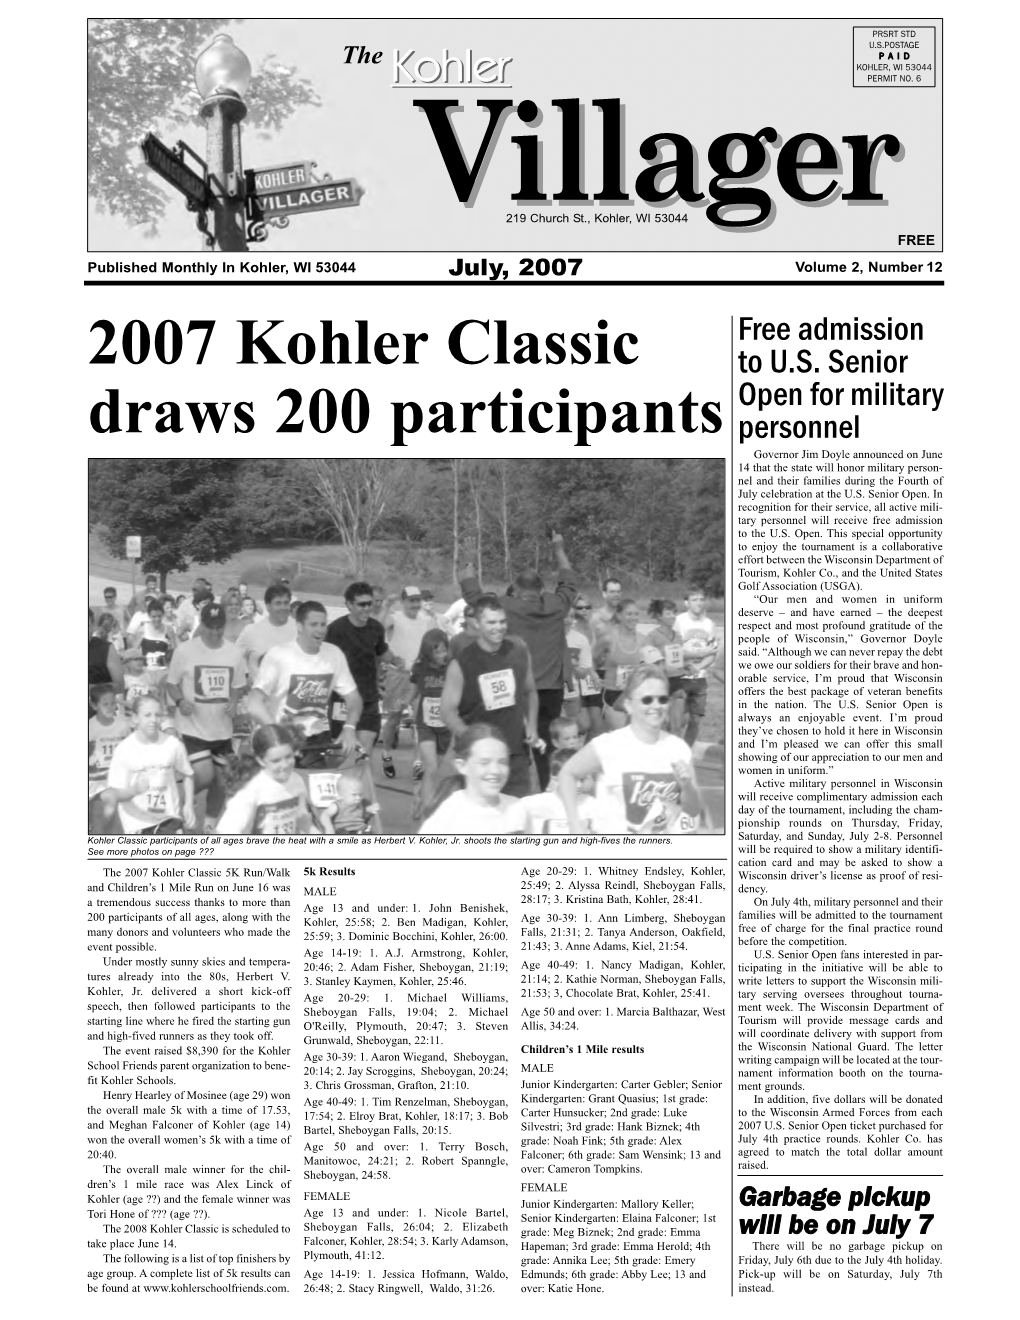 2007 Kohler Classic Draws 200 Participants